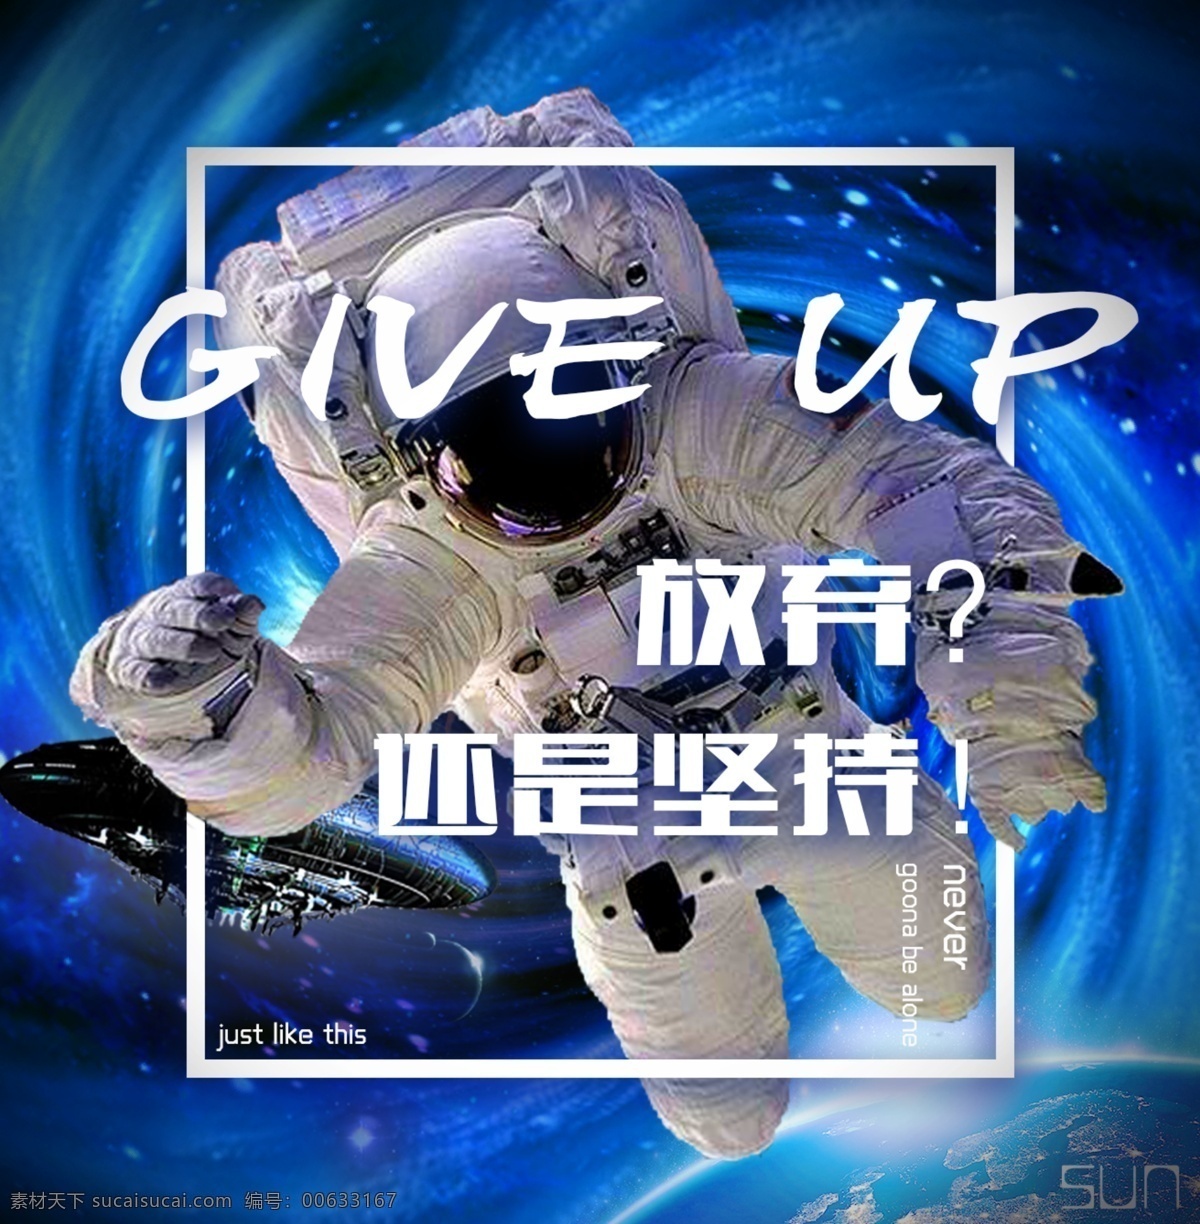 宇航员 励志 蓝 调 简易 透视 海报 公益 激励 太空 科幻